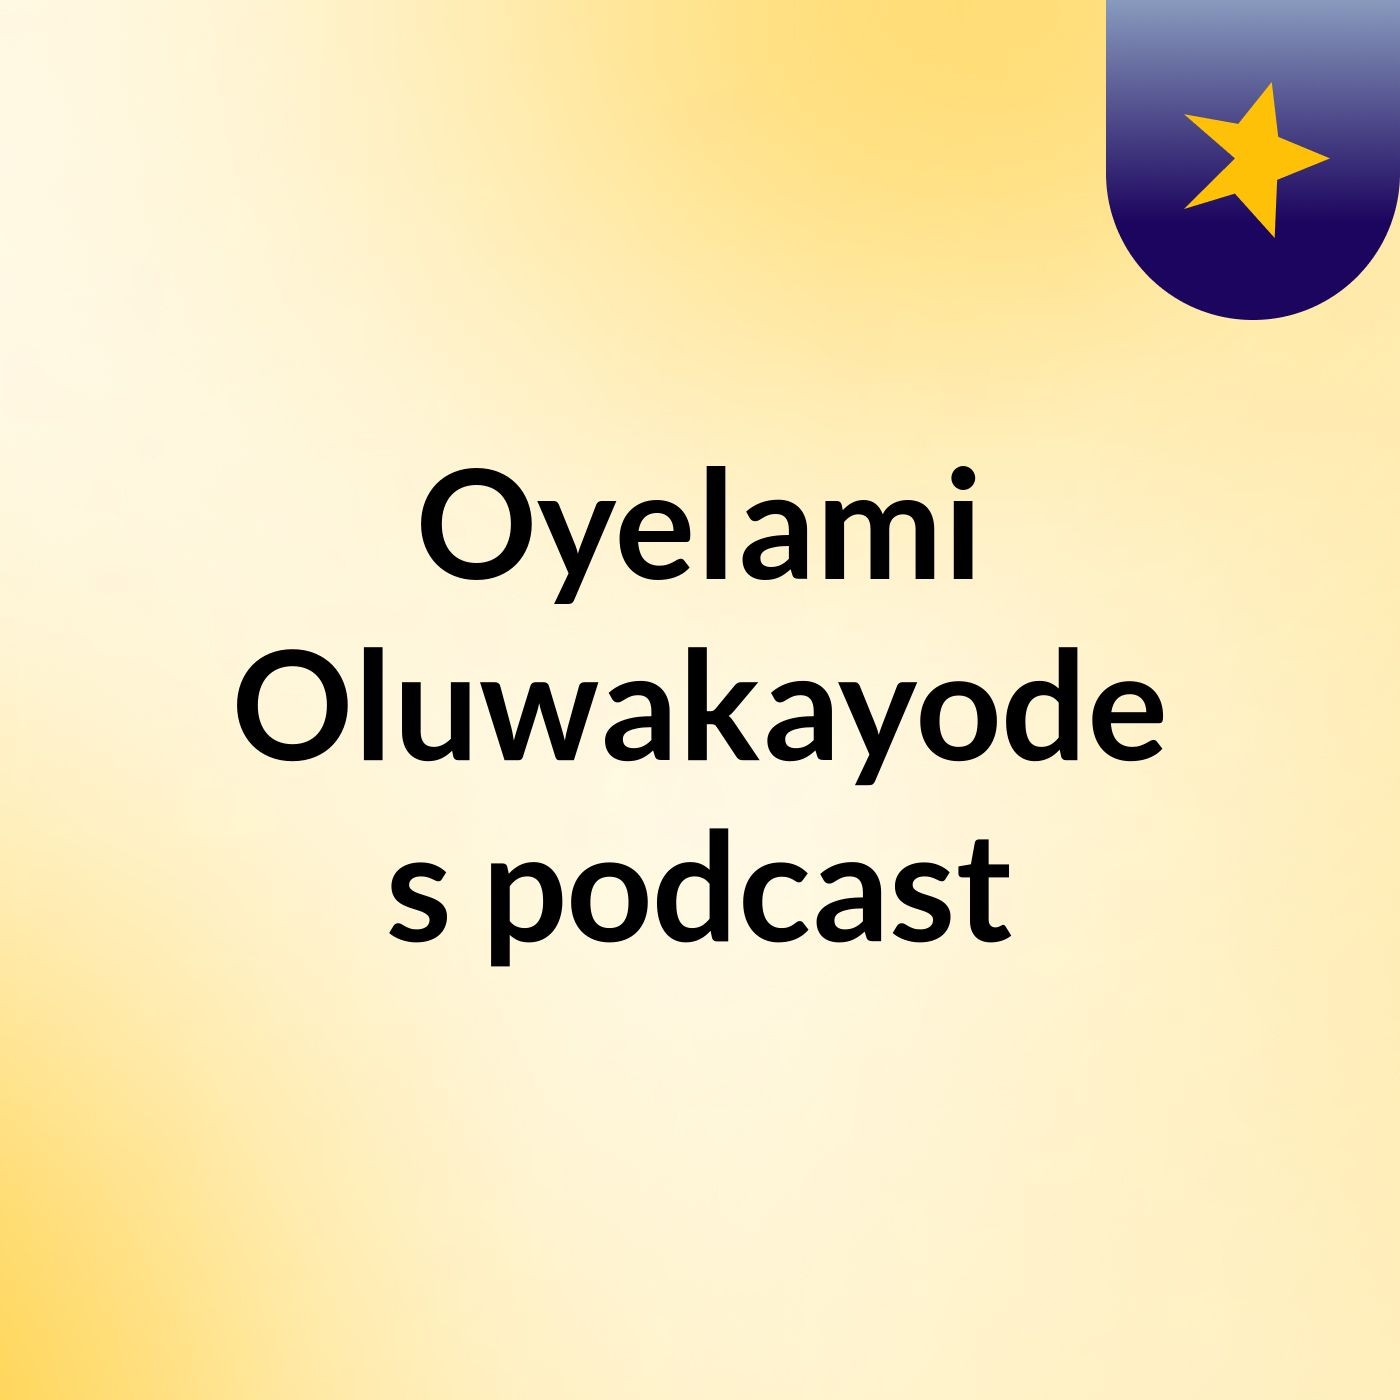 Oyelami Oluwakayode's podcast